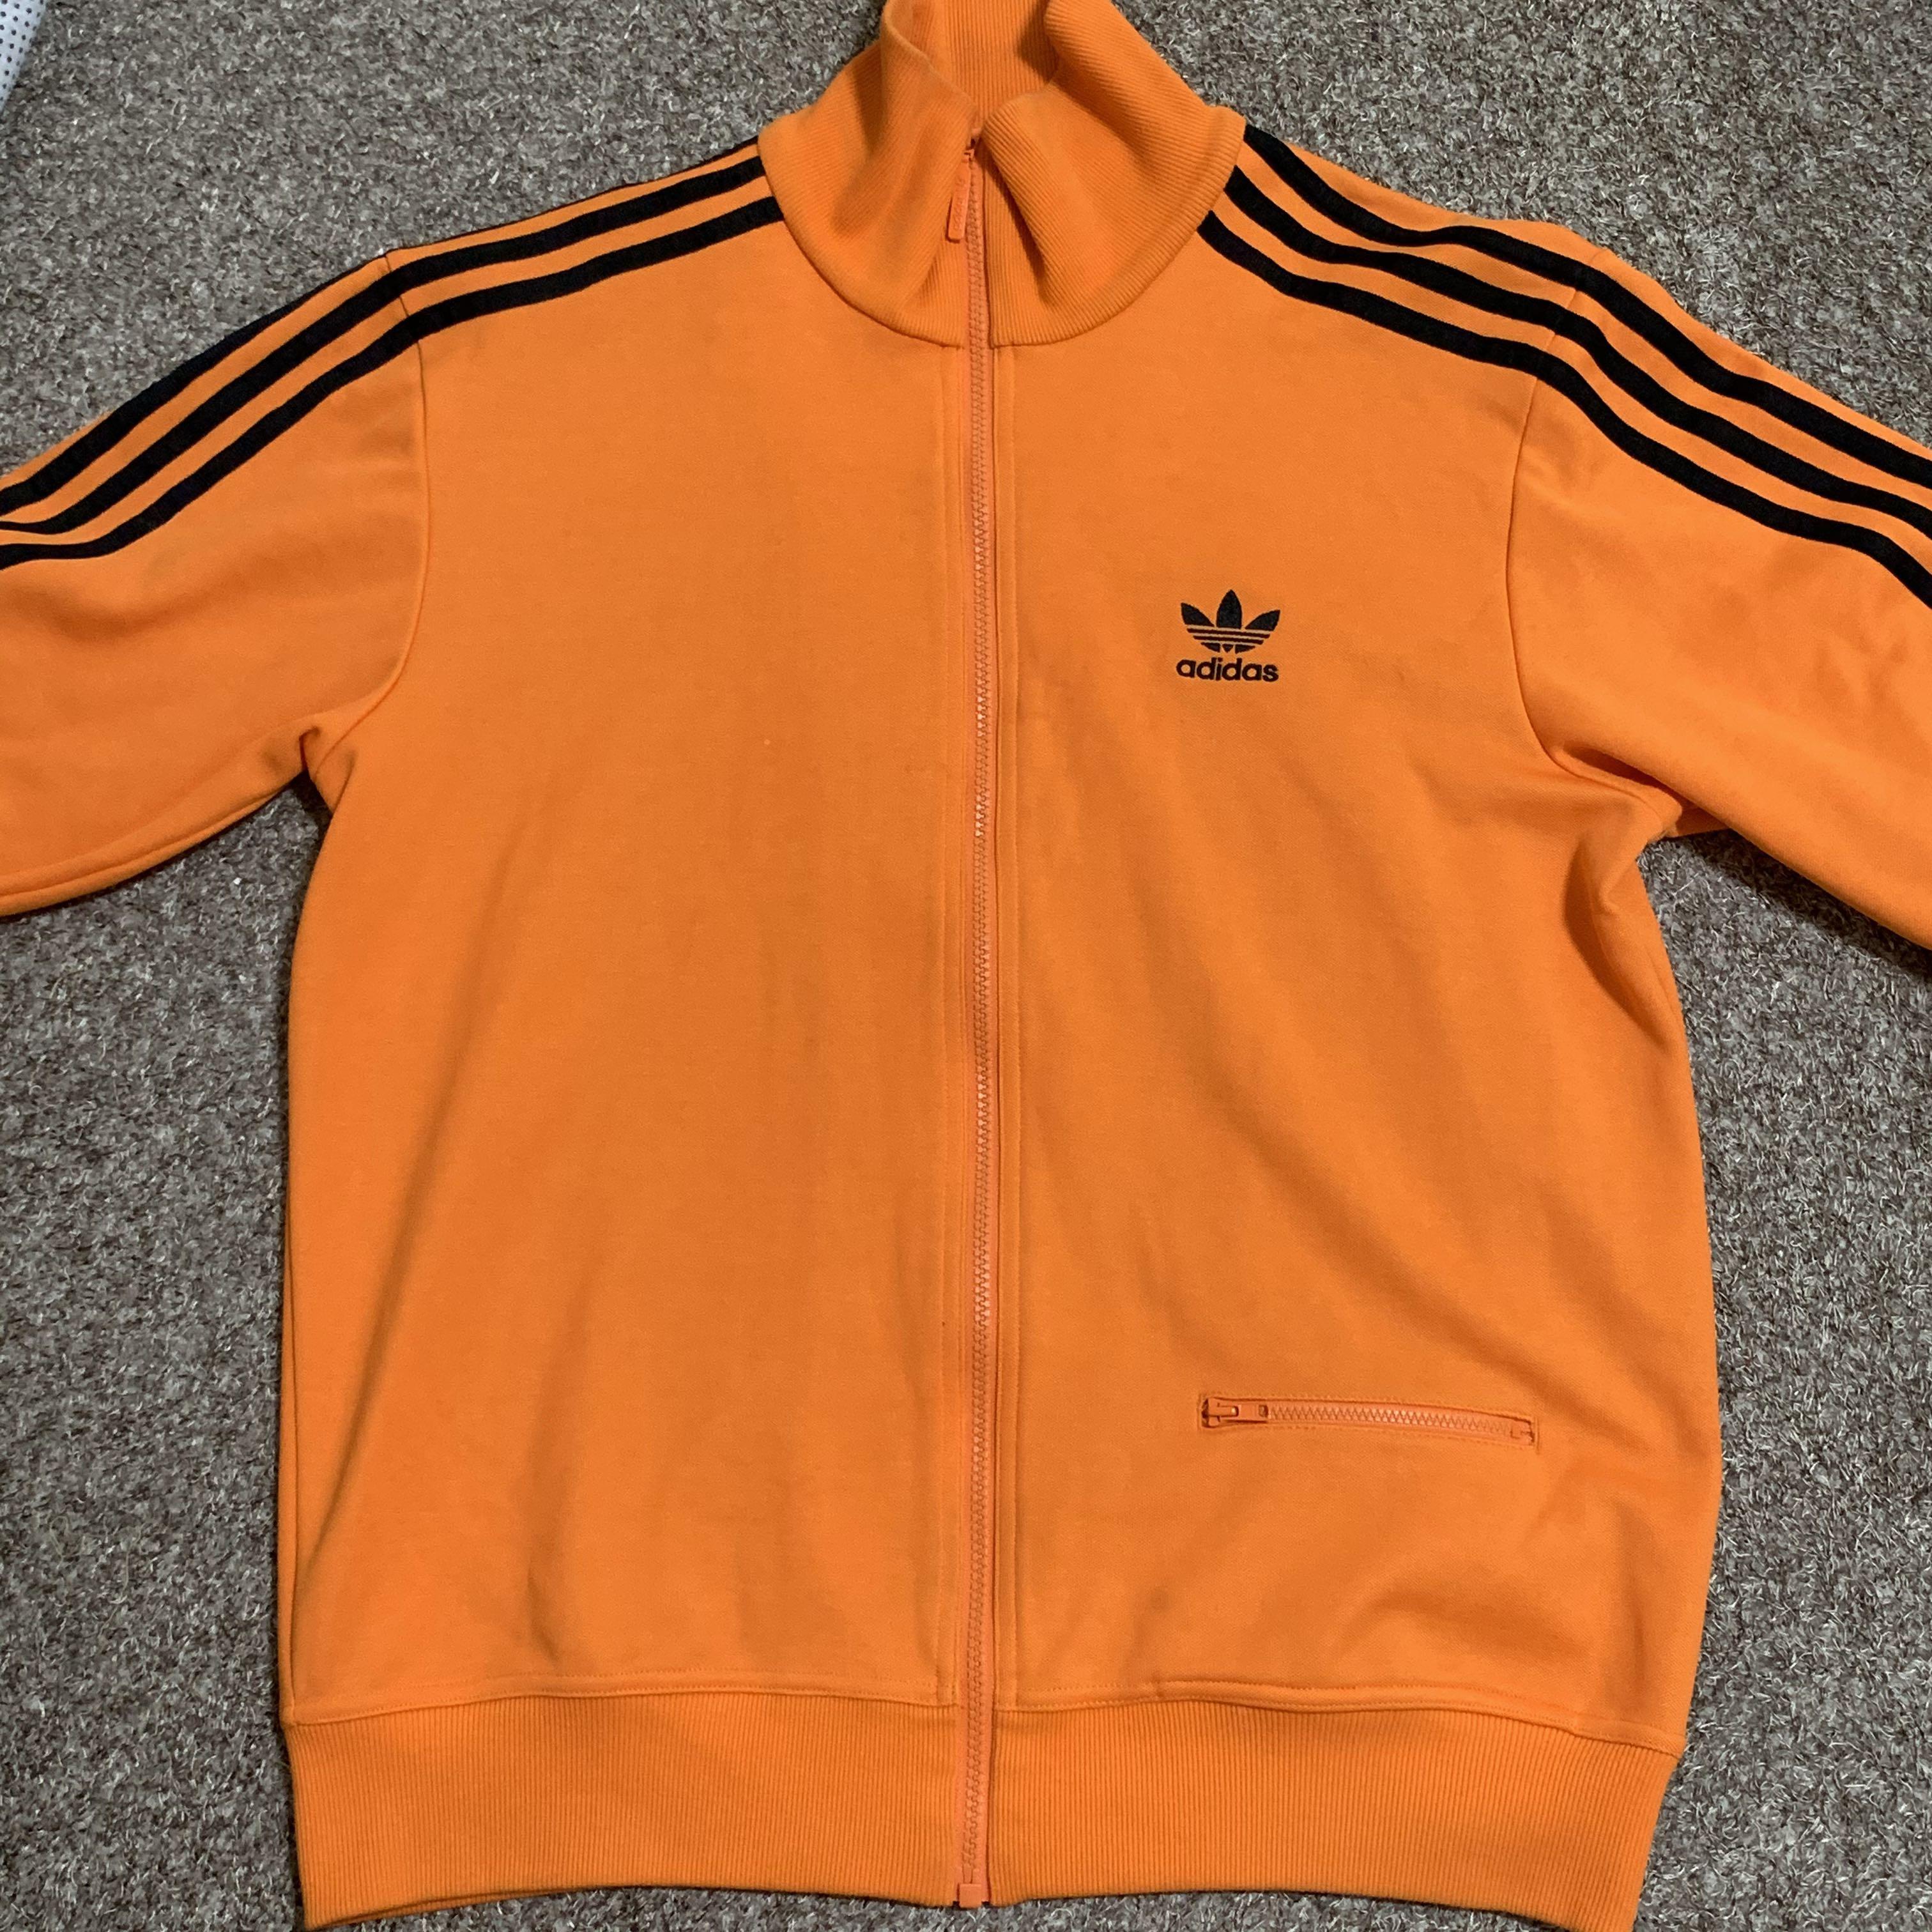 adidas orange track jacket